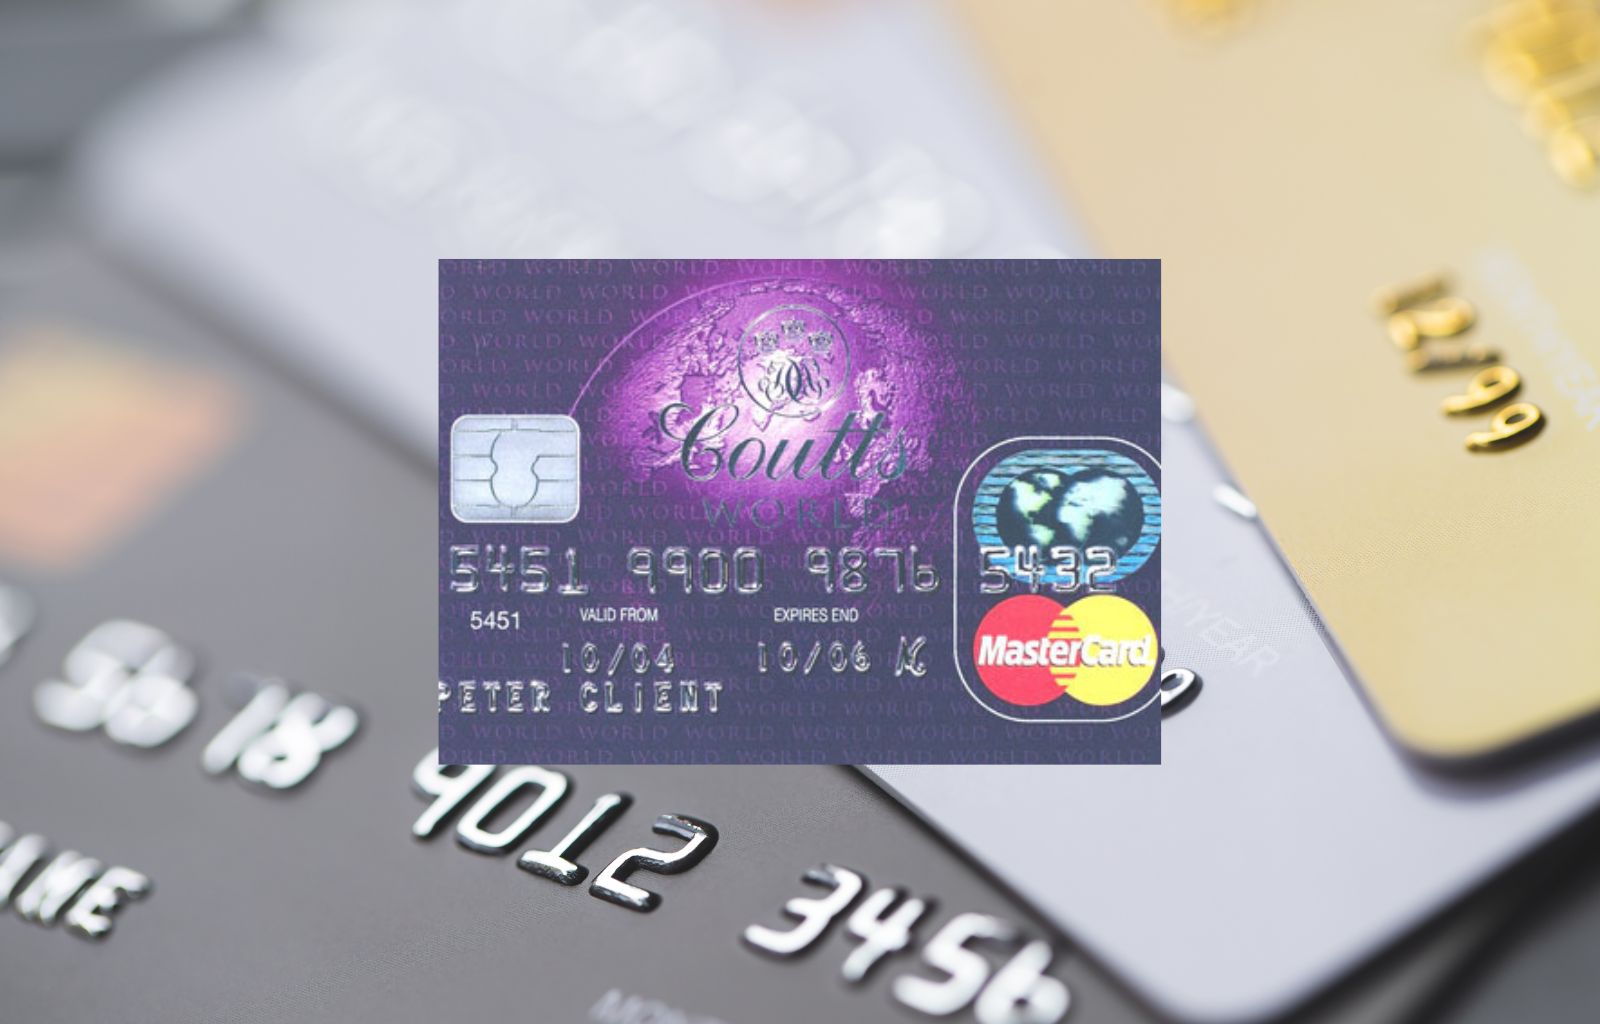 ¿Cuál es la tarjeta de crédito más exclusiva del mundo?